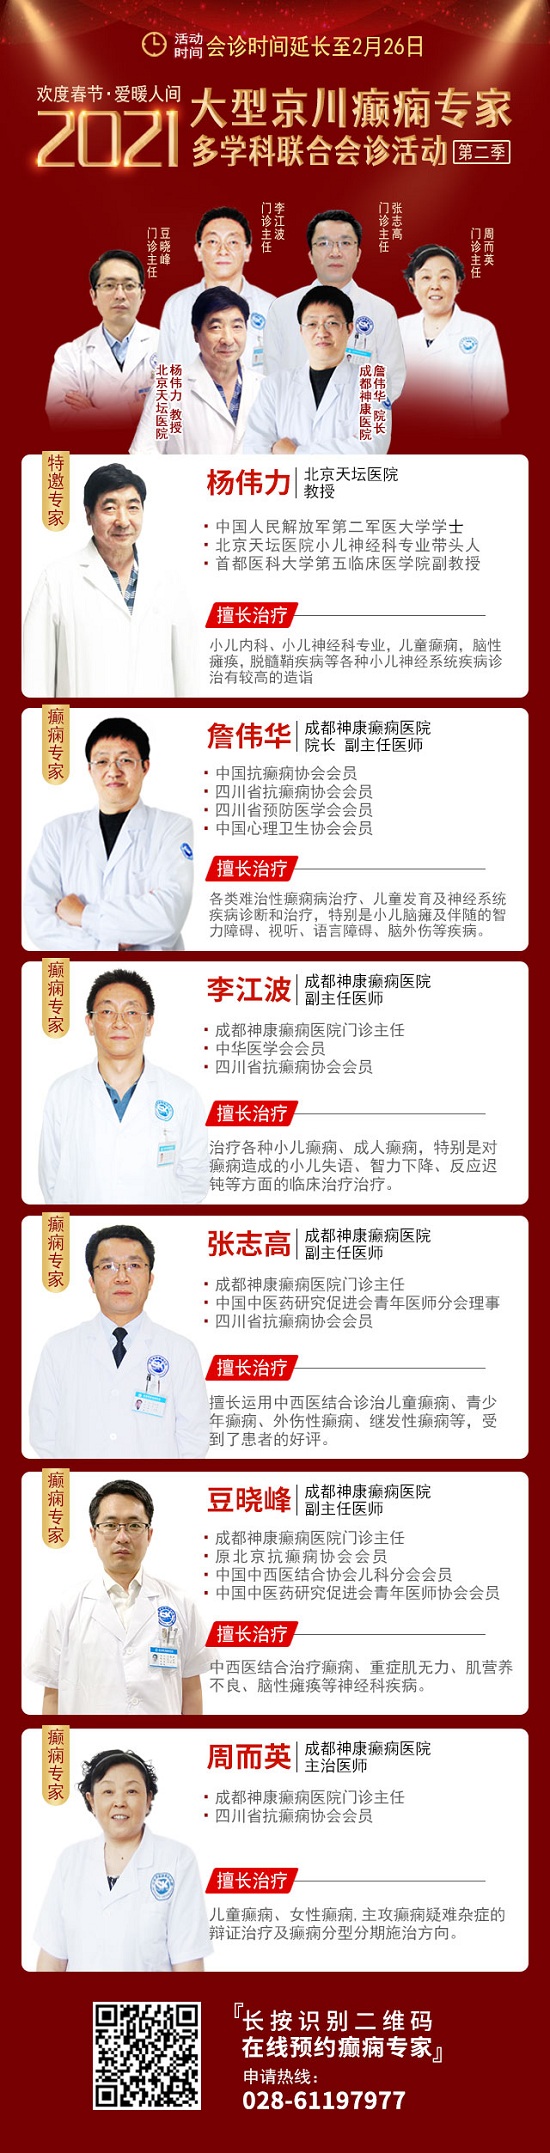 【成都癫痫病医院好消息】北京杨伟力教授会诊延常长至26日，专家号继续约!